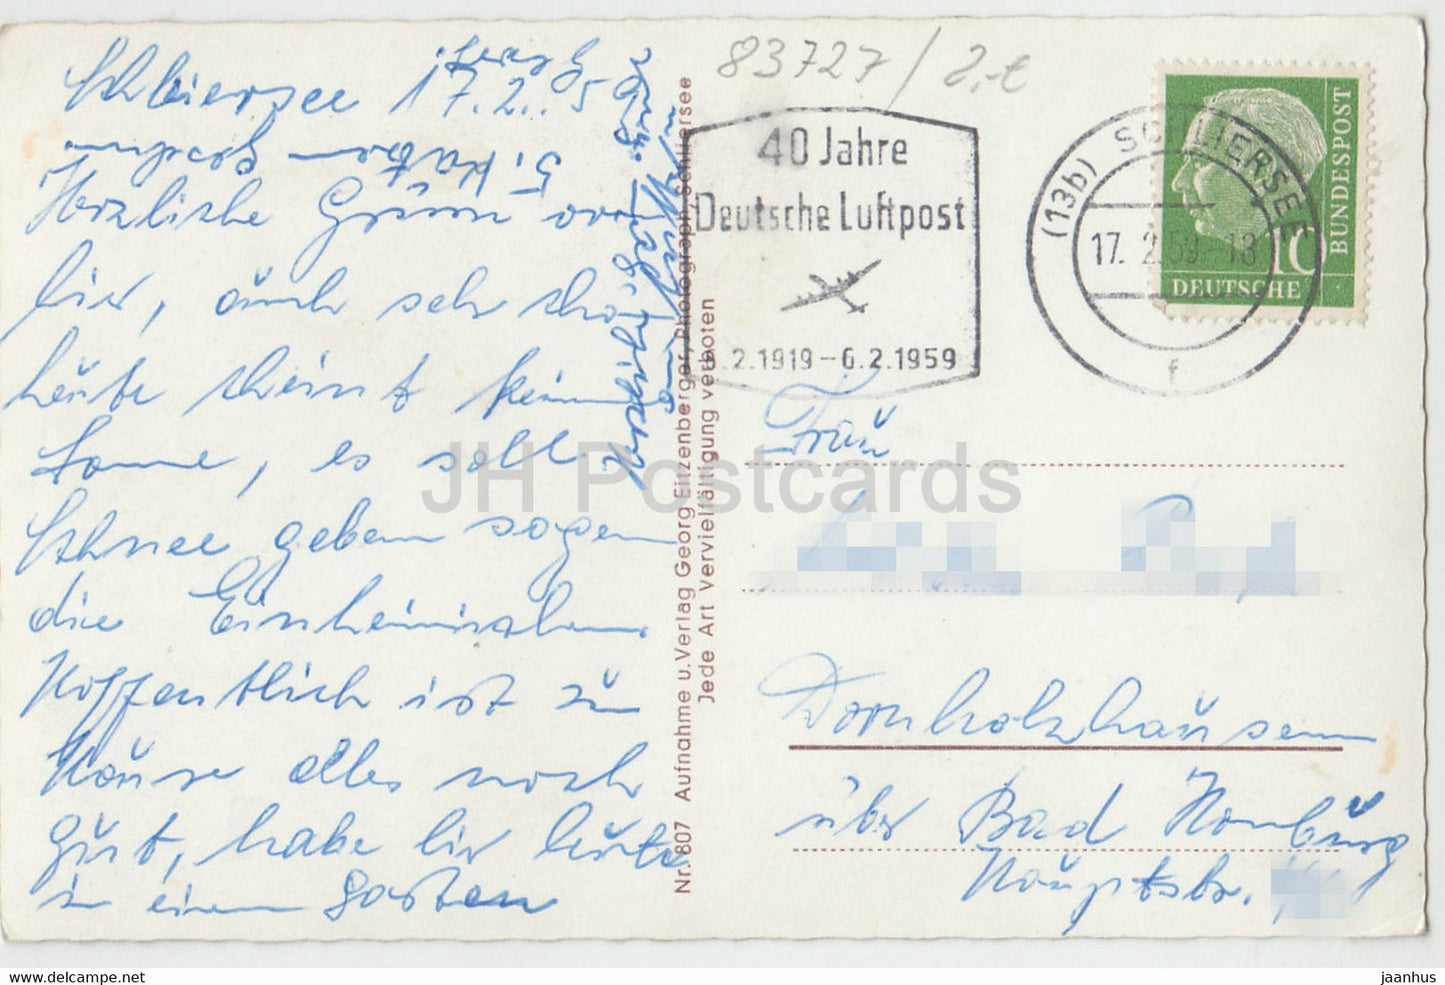 Schliersee mit Jagerkamp u Brecherspitze - 40 Jahre Deutsche Luftpost - 807 - 1959 - Germany - used